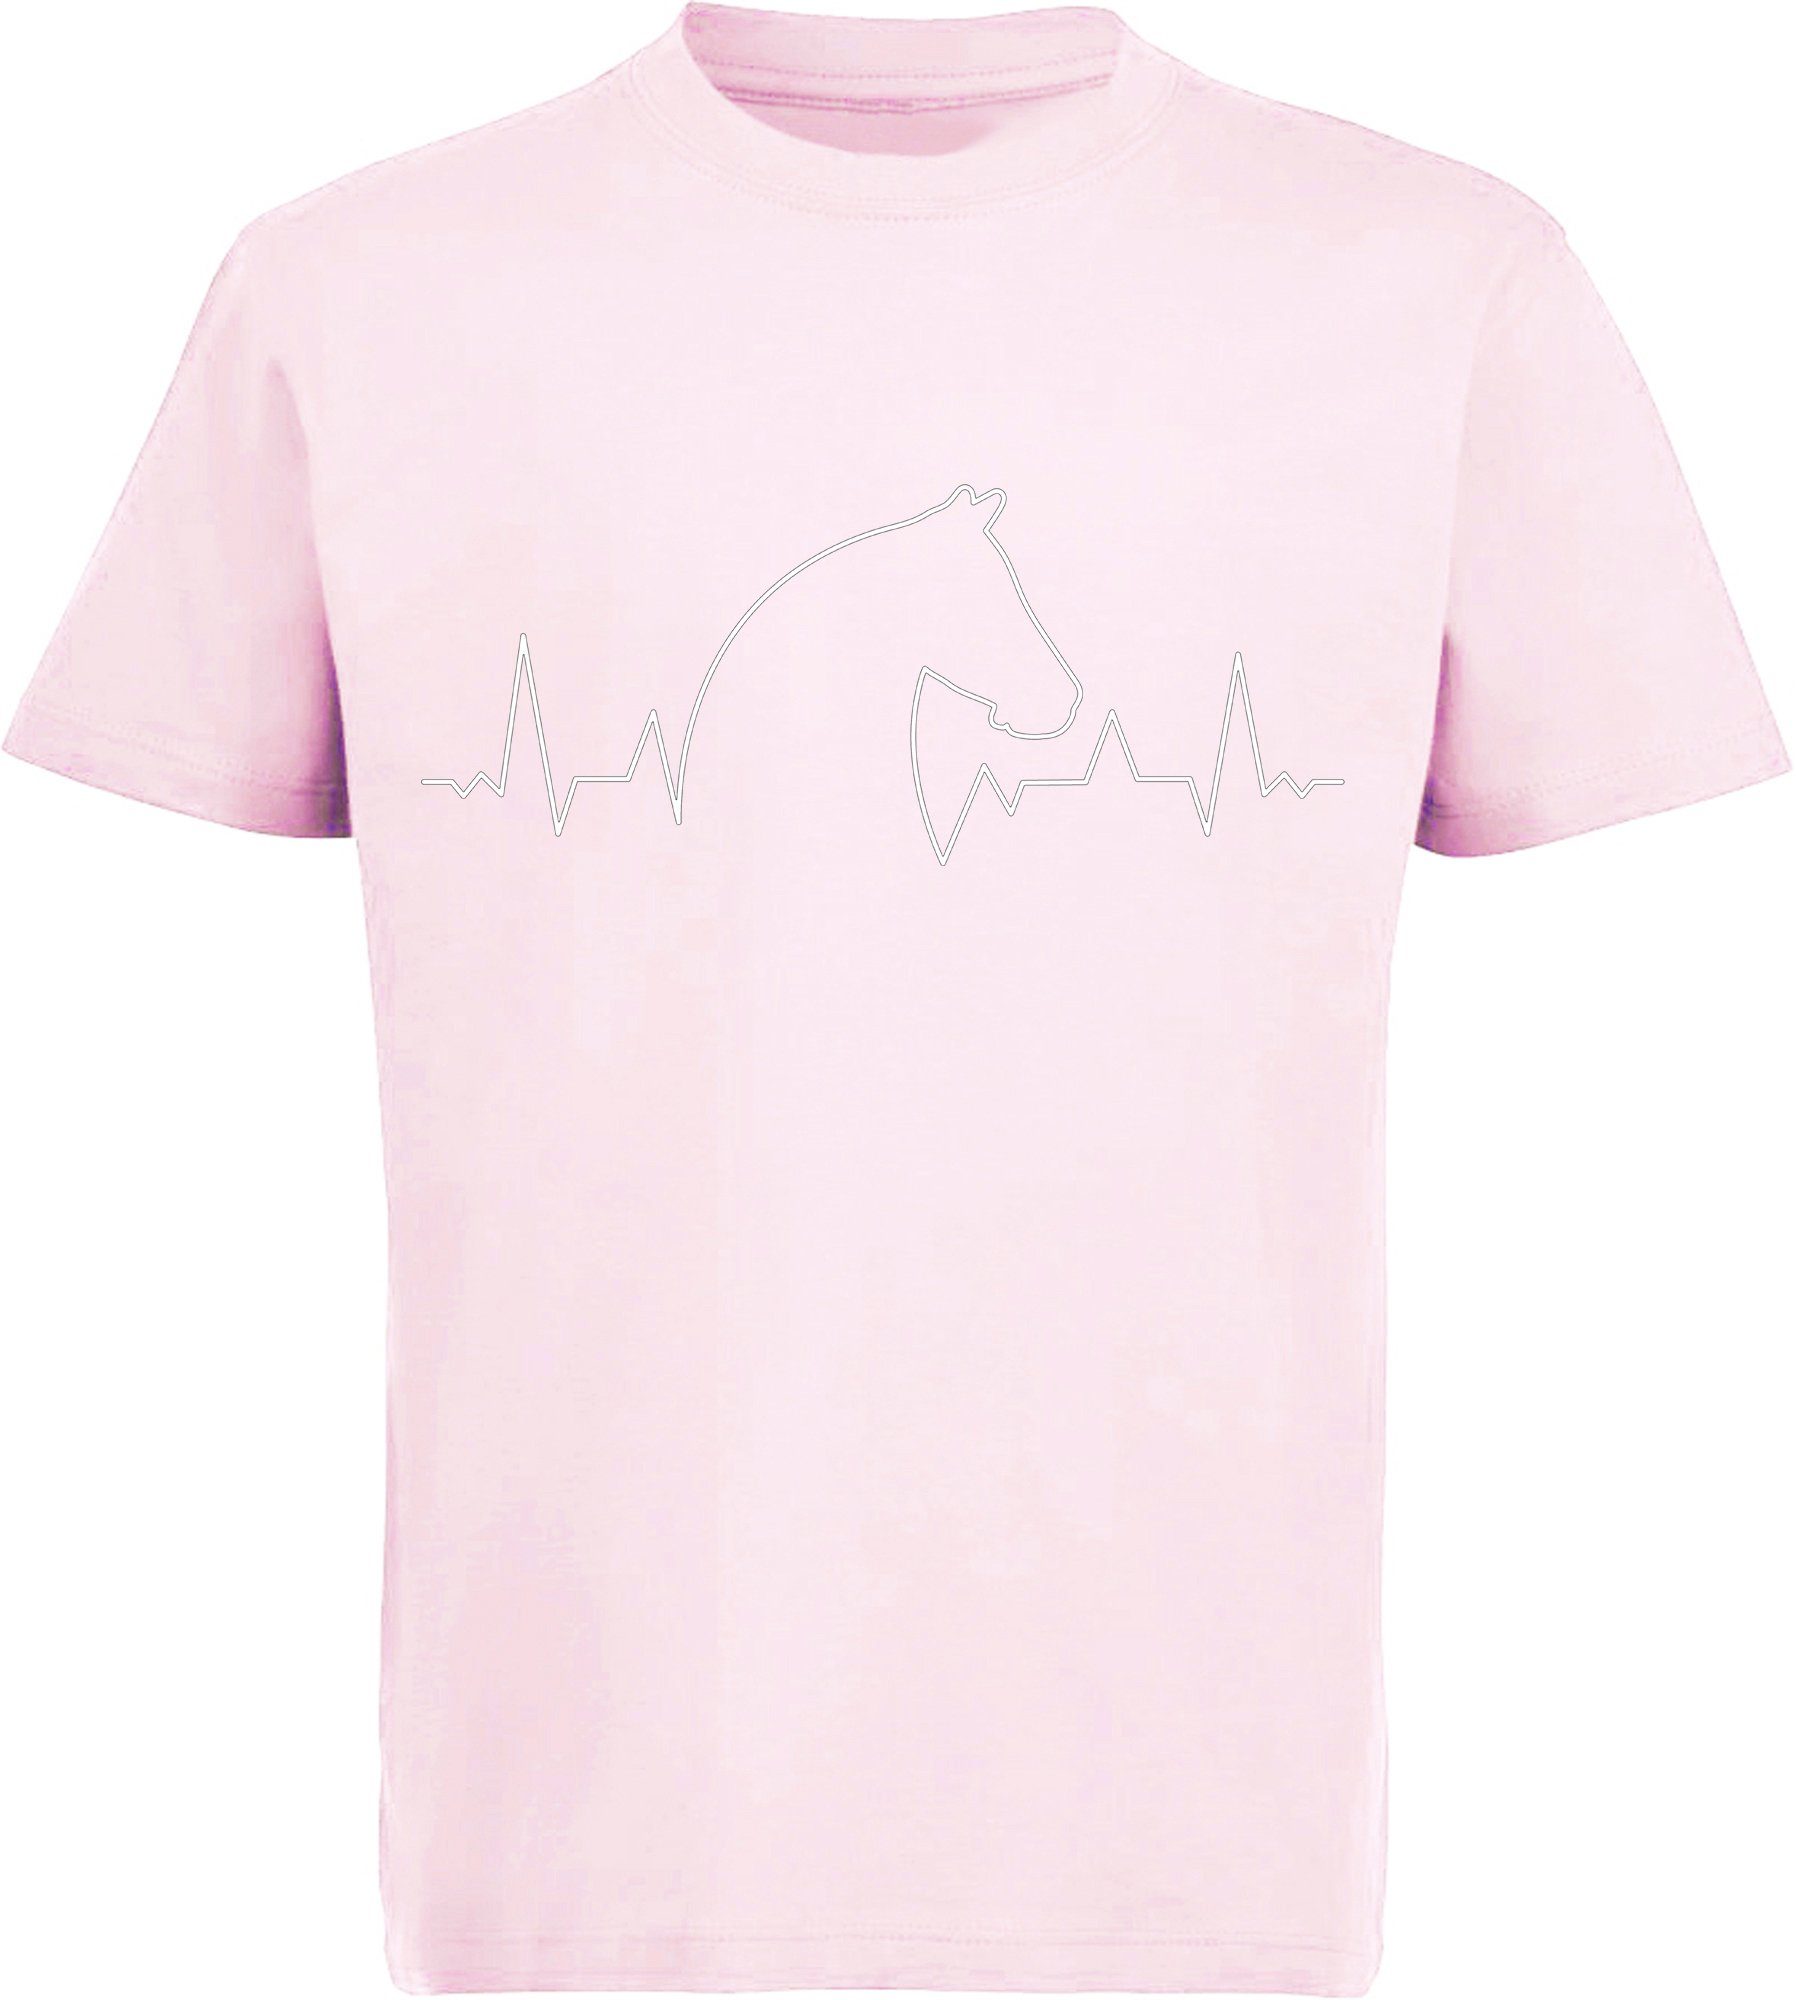 MyDesign24 Print-Shirt bedrucktes Kinder T-Shirt Aufdruck, mit i154 Baumwollshirt mit Pferdekopf Herzschlaglinie rosa